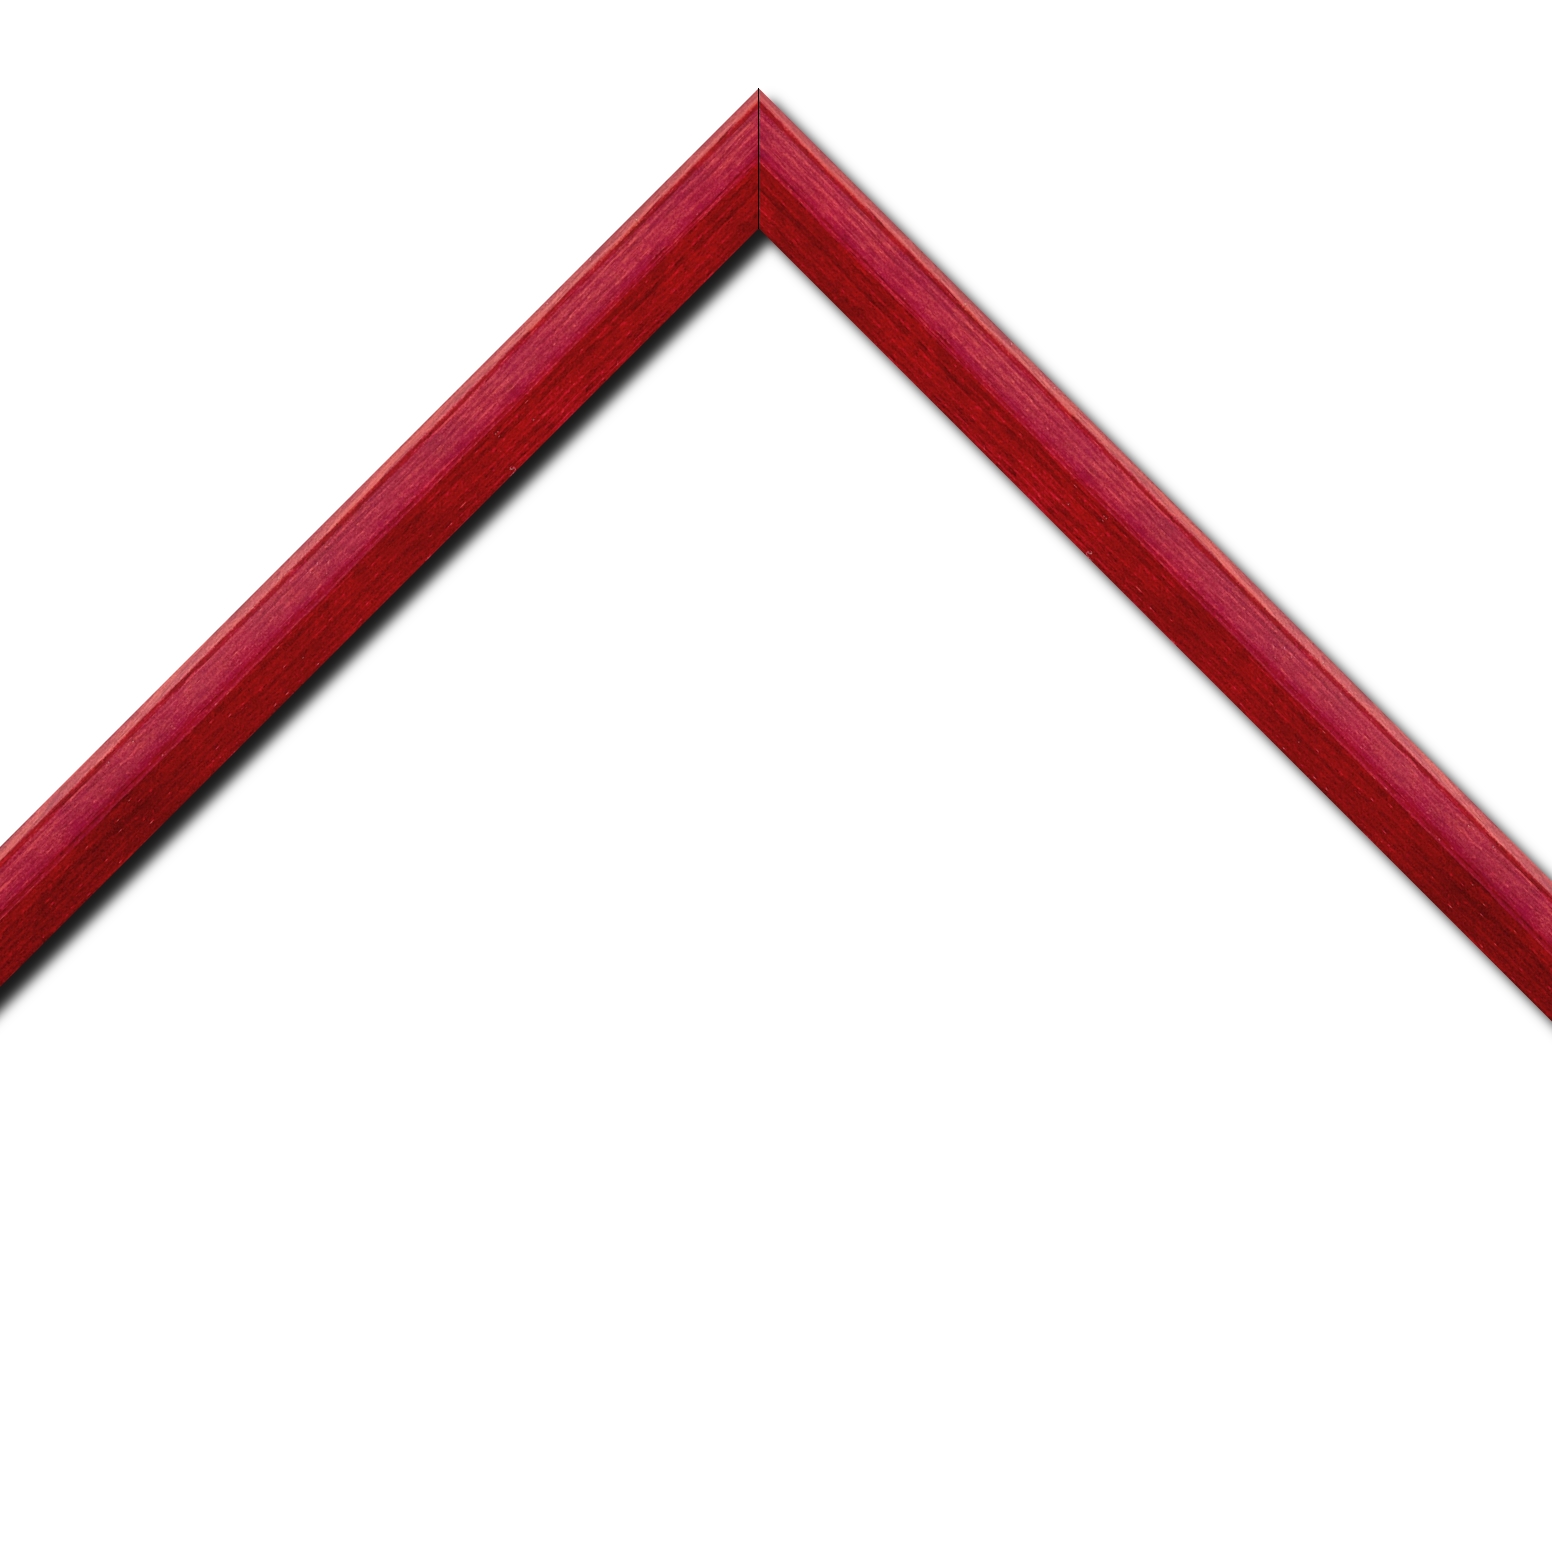 Baguette bois profil arrondi en pente plongeant largeur 2.4cm couleur rouge finition vernis brillant,veine du bois  apparent (pin) ,